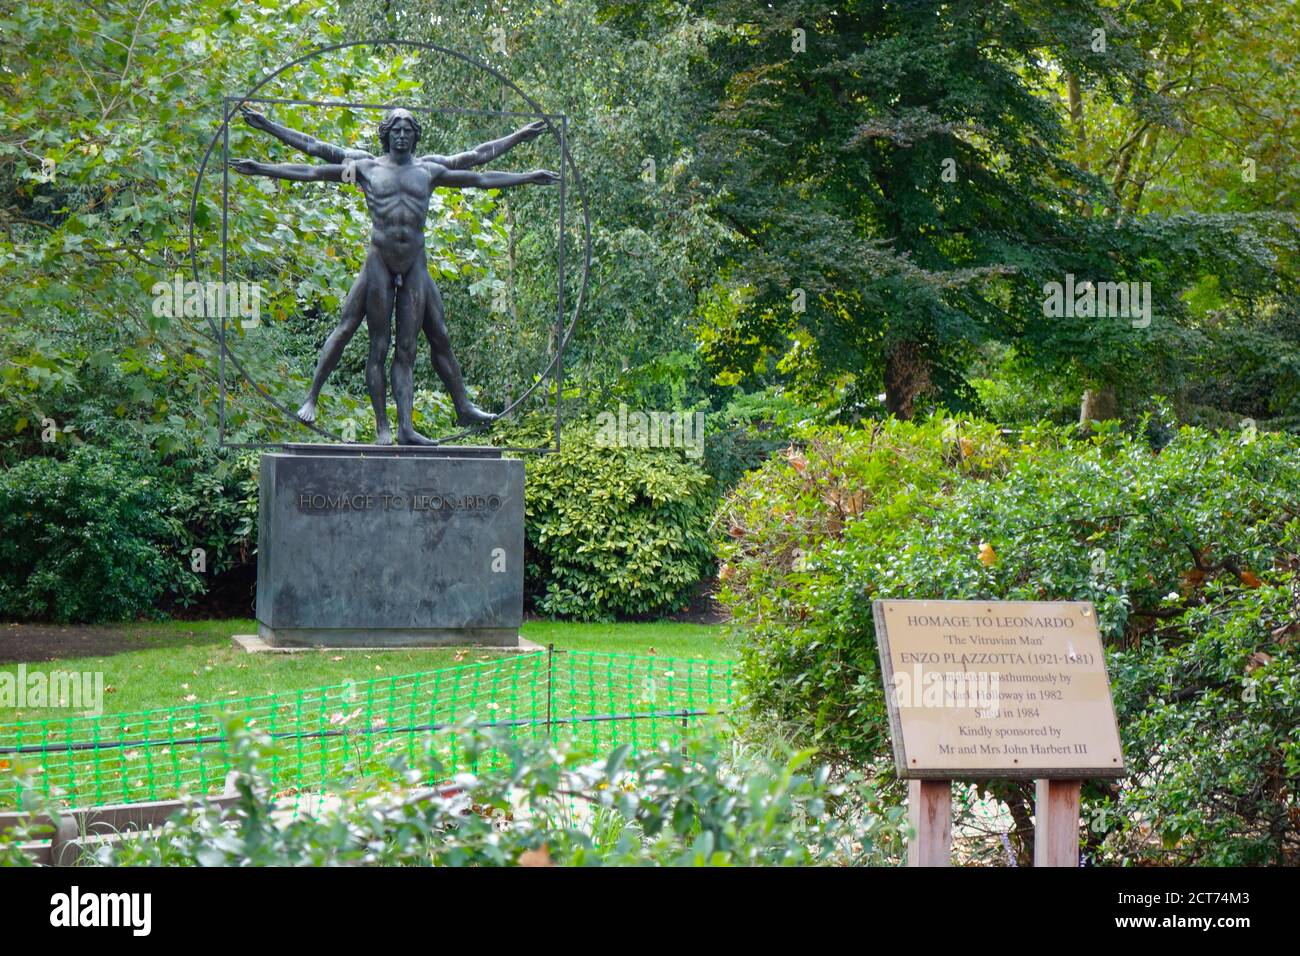 Hommage an Leonardo - eine Außenstatue des italienischen Bildhauers Enzo Plazzotta am Belgrave Square im Zentrum von London, Großbritannien. Stockfoto